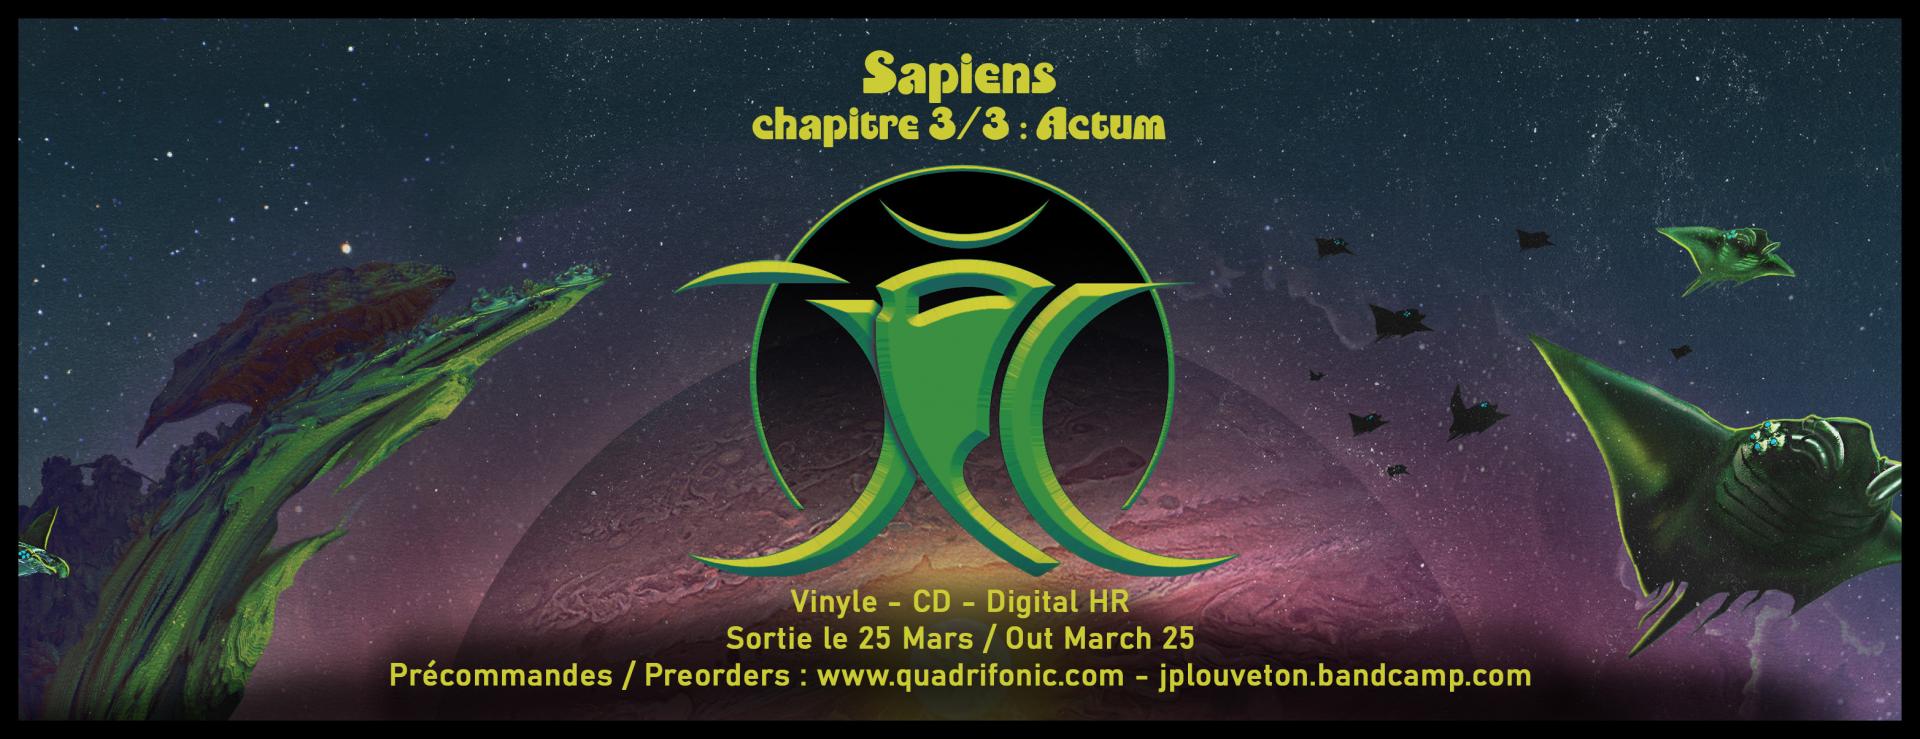 Jpl sapiens 3